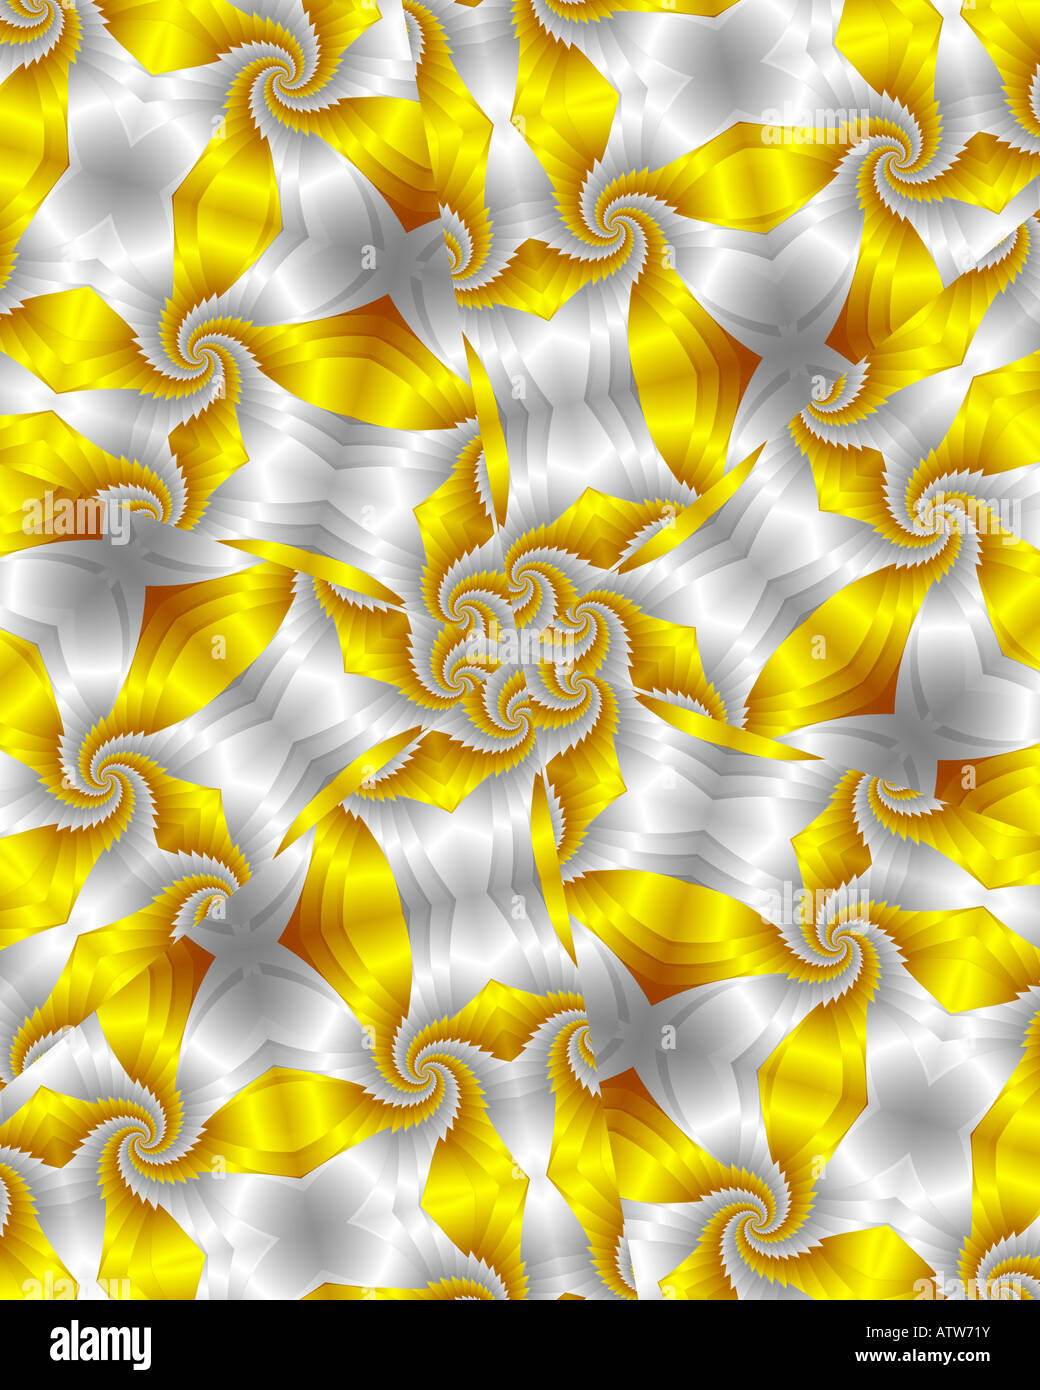 Résumé de l'image fractale ressemblant à du papier peint kaléidoscope satin Banque D'Images